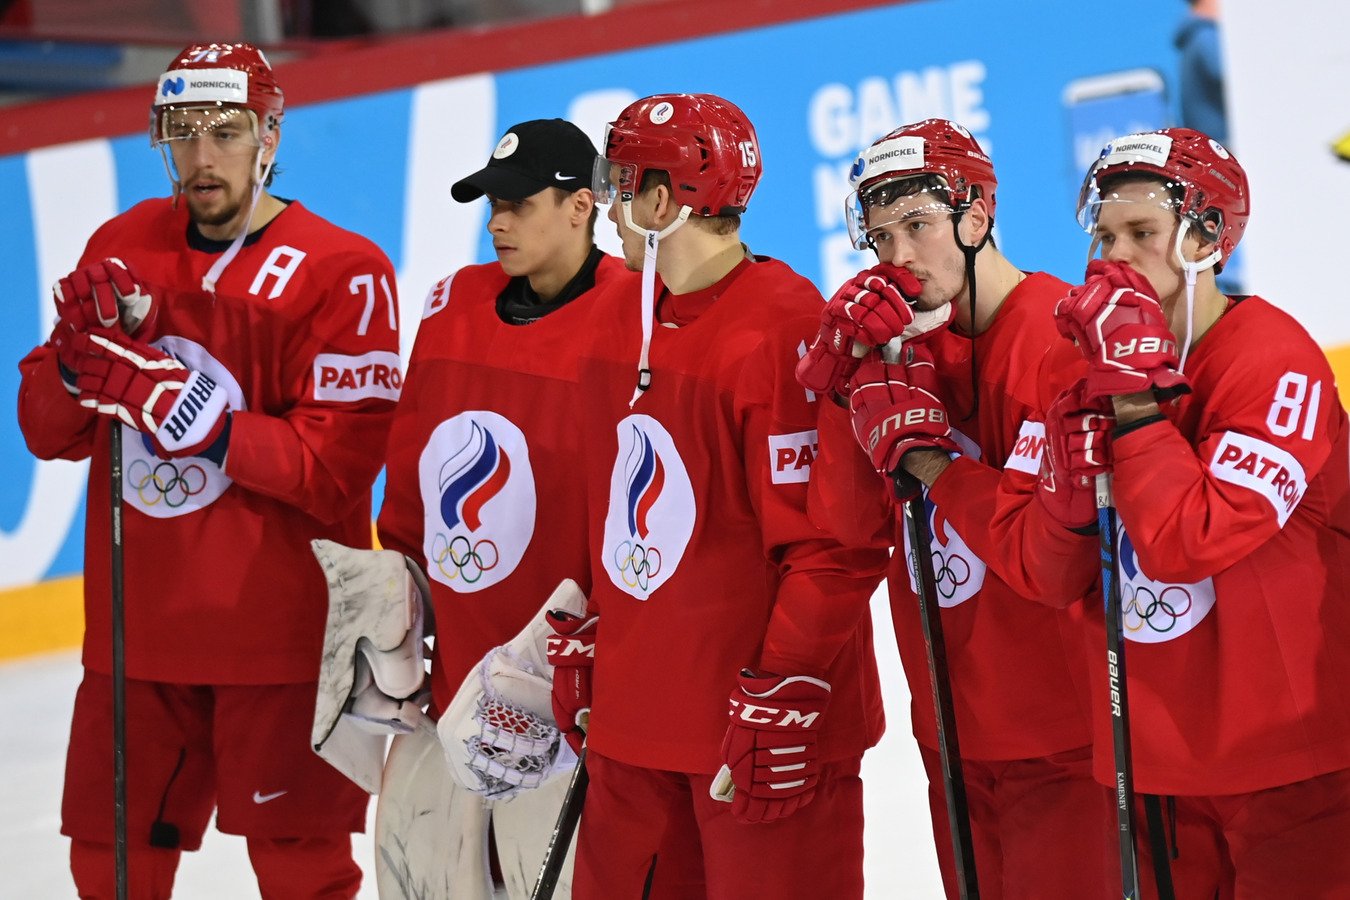 России сборной россии по хоккею фото игроков